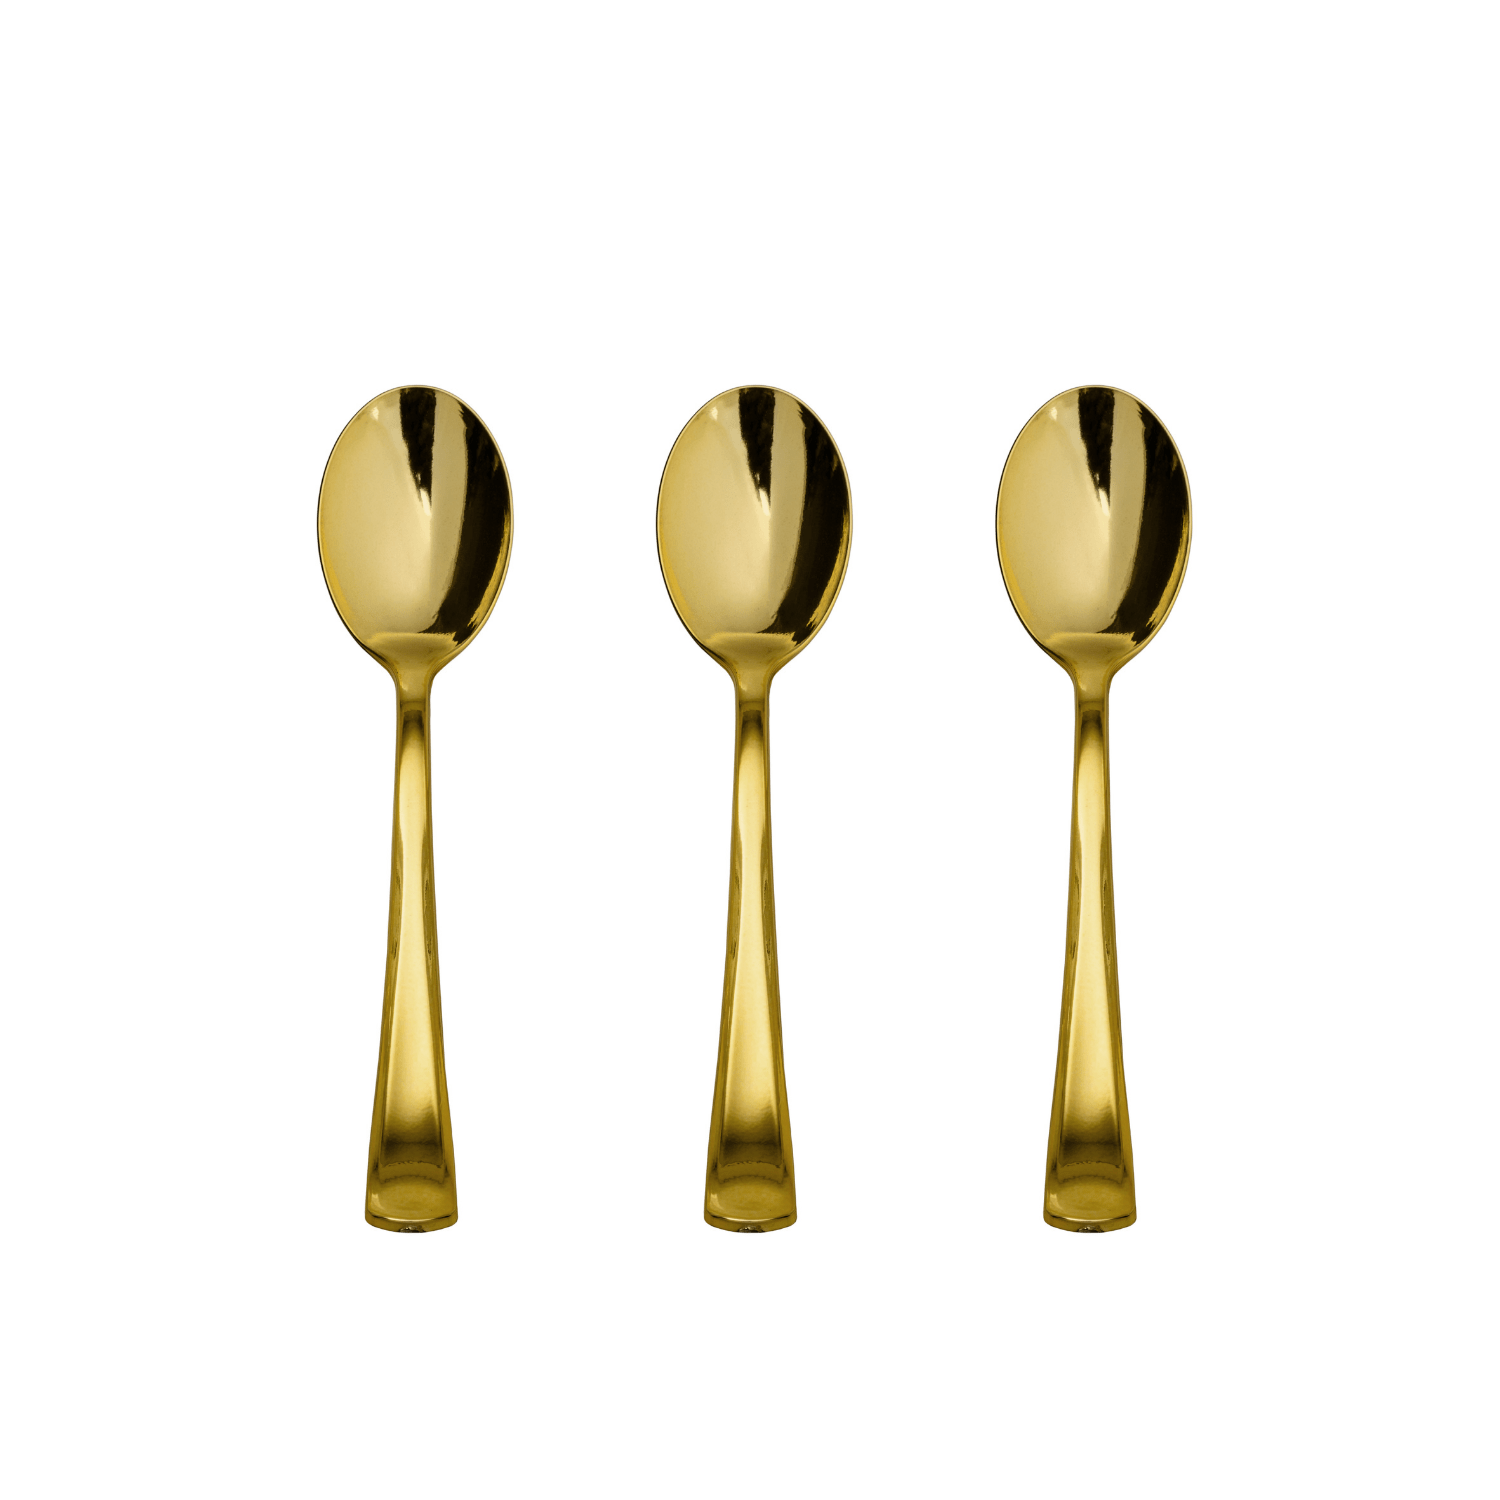 Exquisite Gold Plastic Tea Spoons | 480 Count